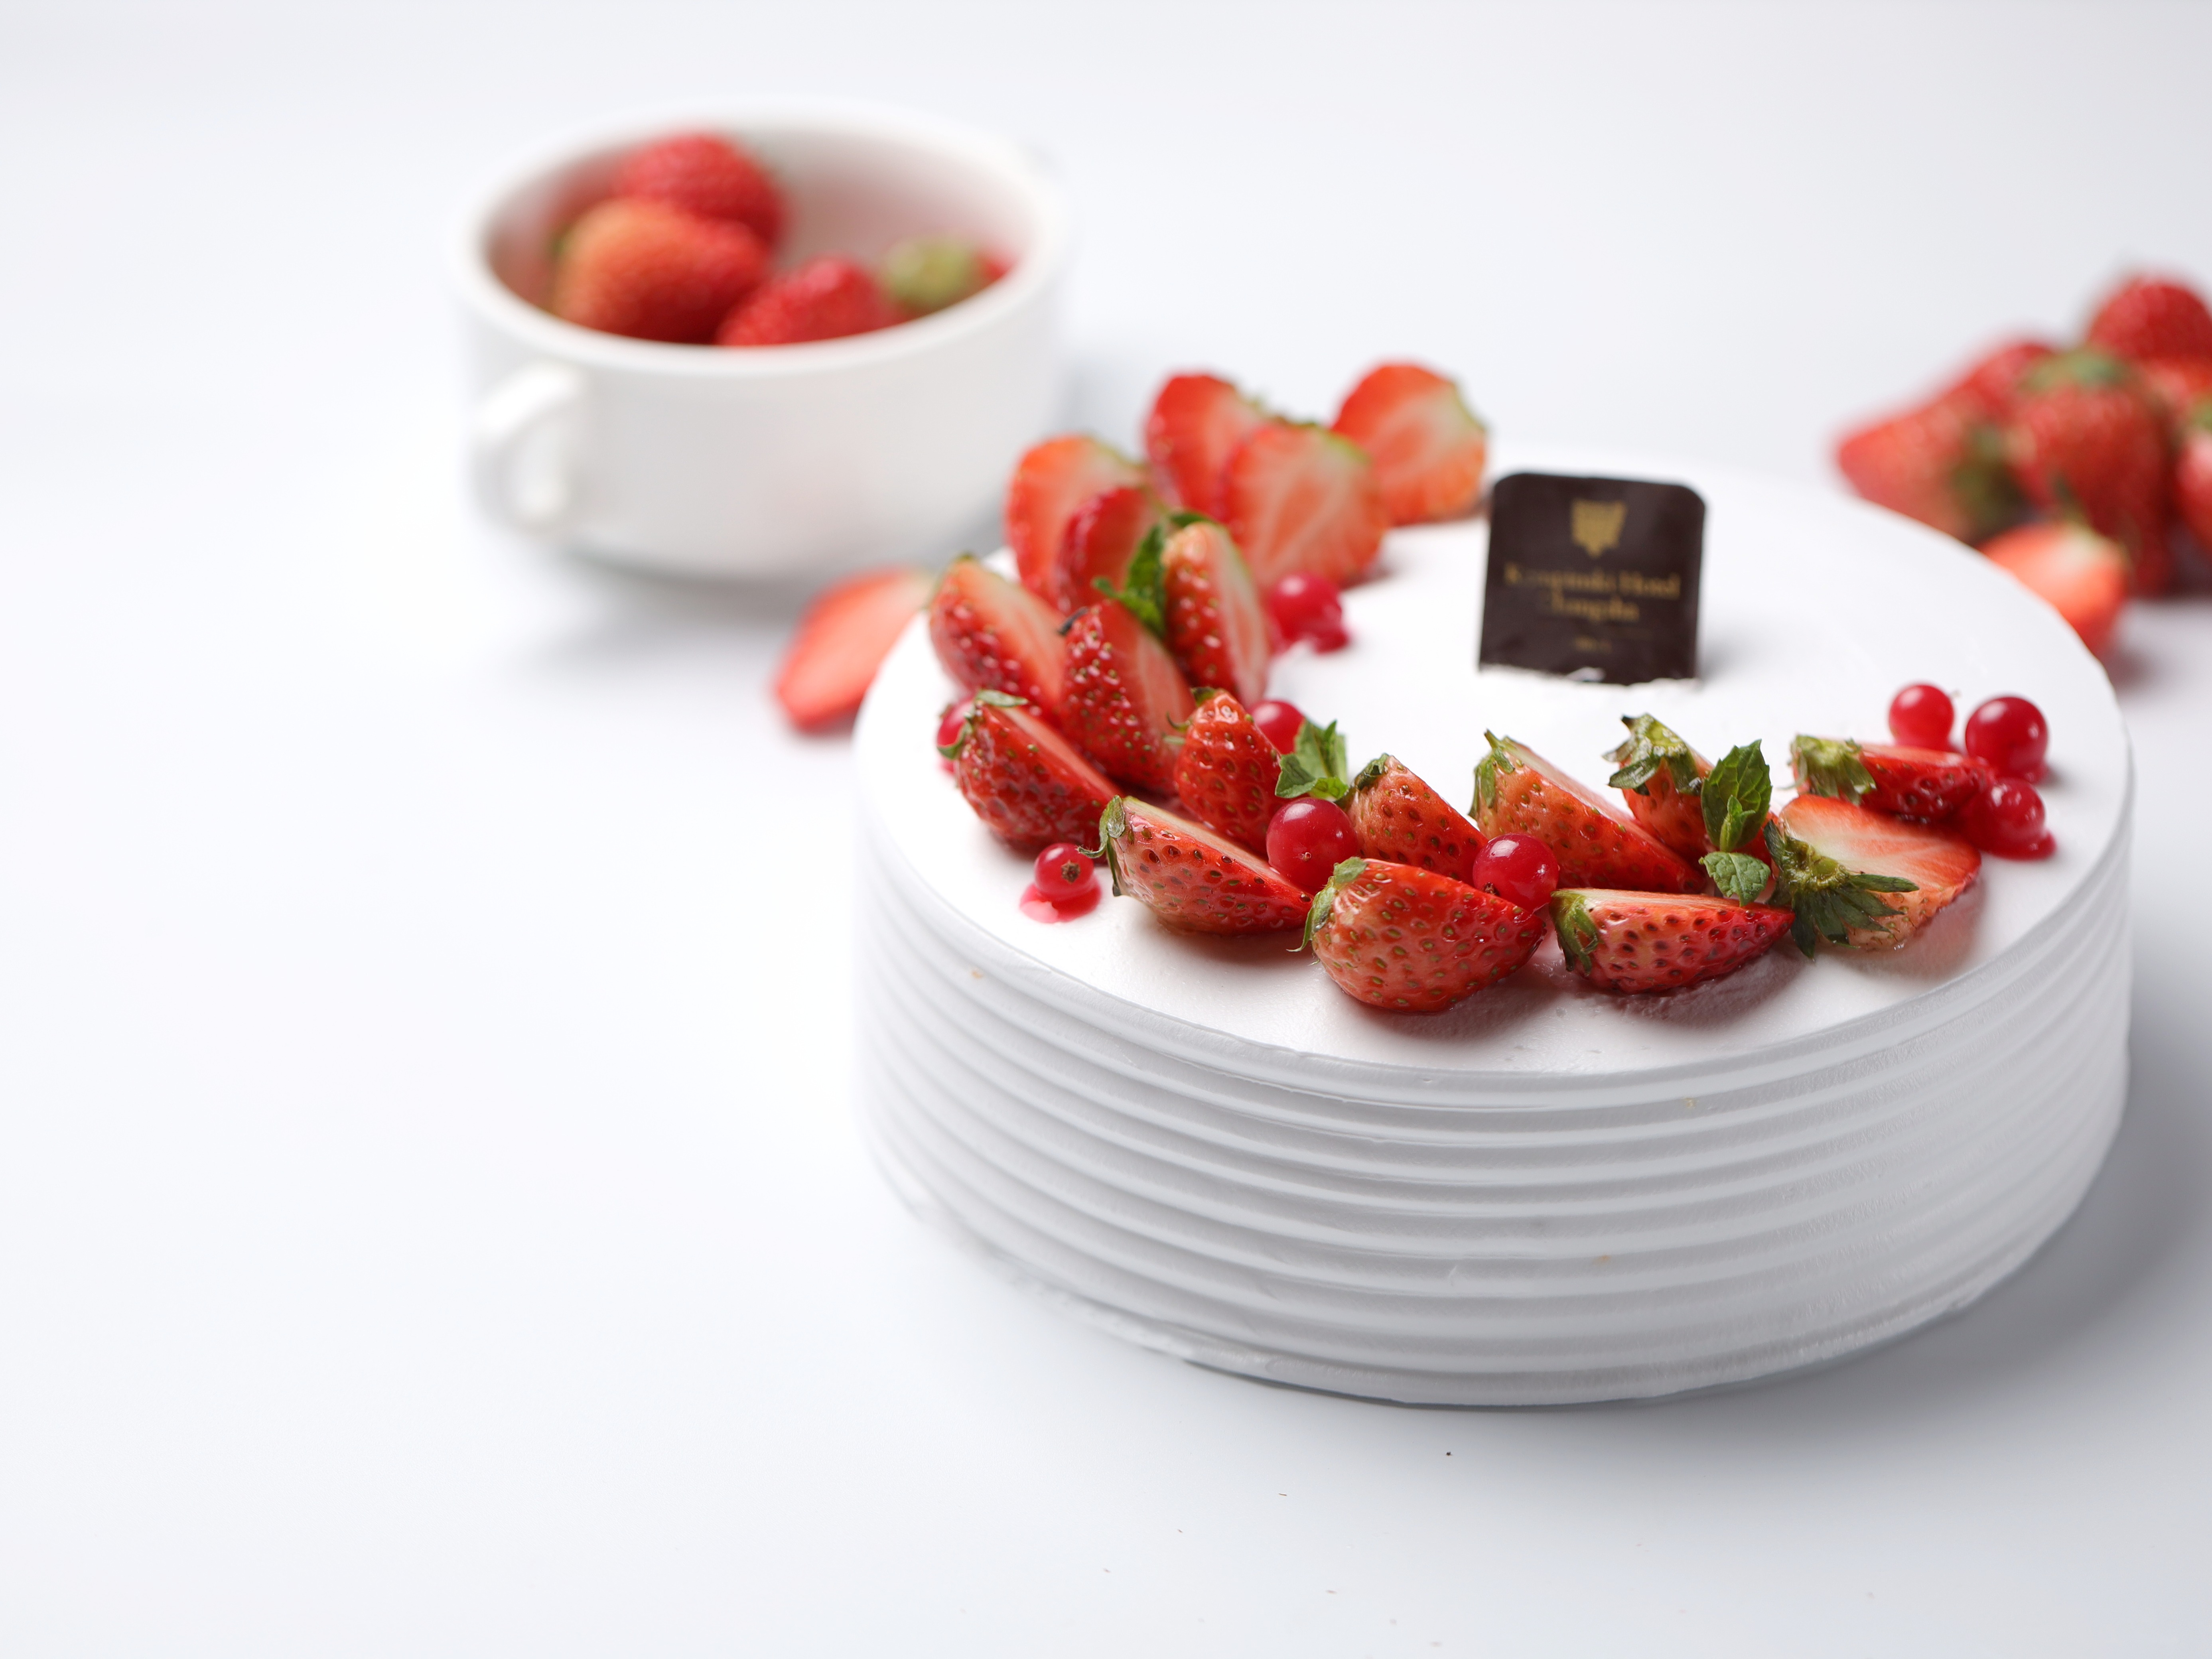 台北萬豪酒店推出造型母親節蛋糕「蜜桃莓果慕斯蛋糕」4月30日前享早鳥優惠 - Taster 美食加